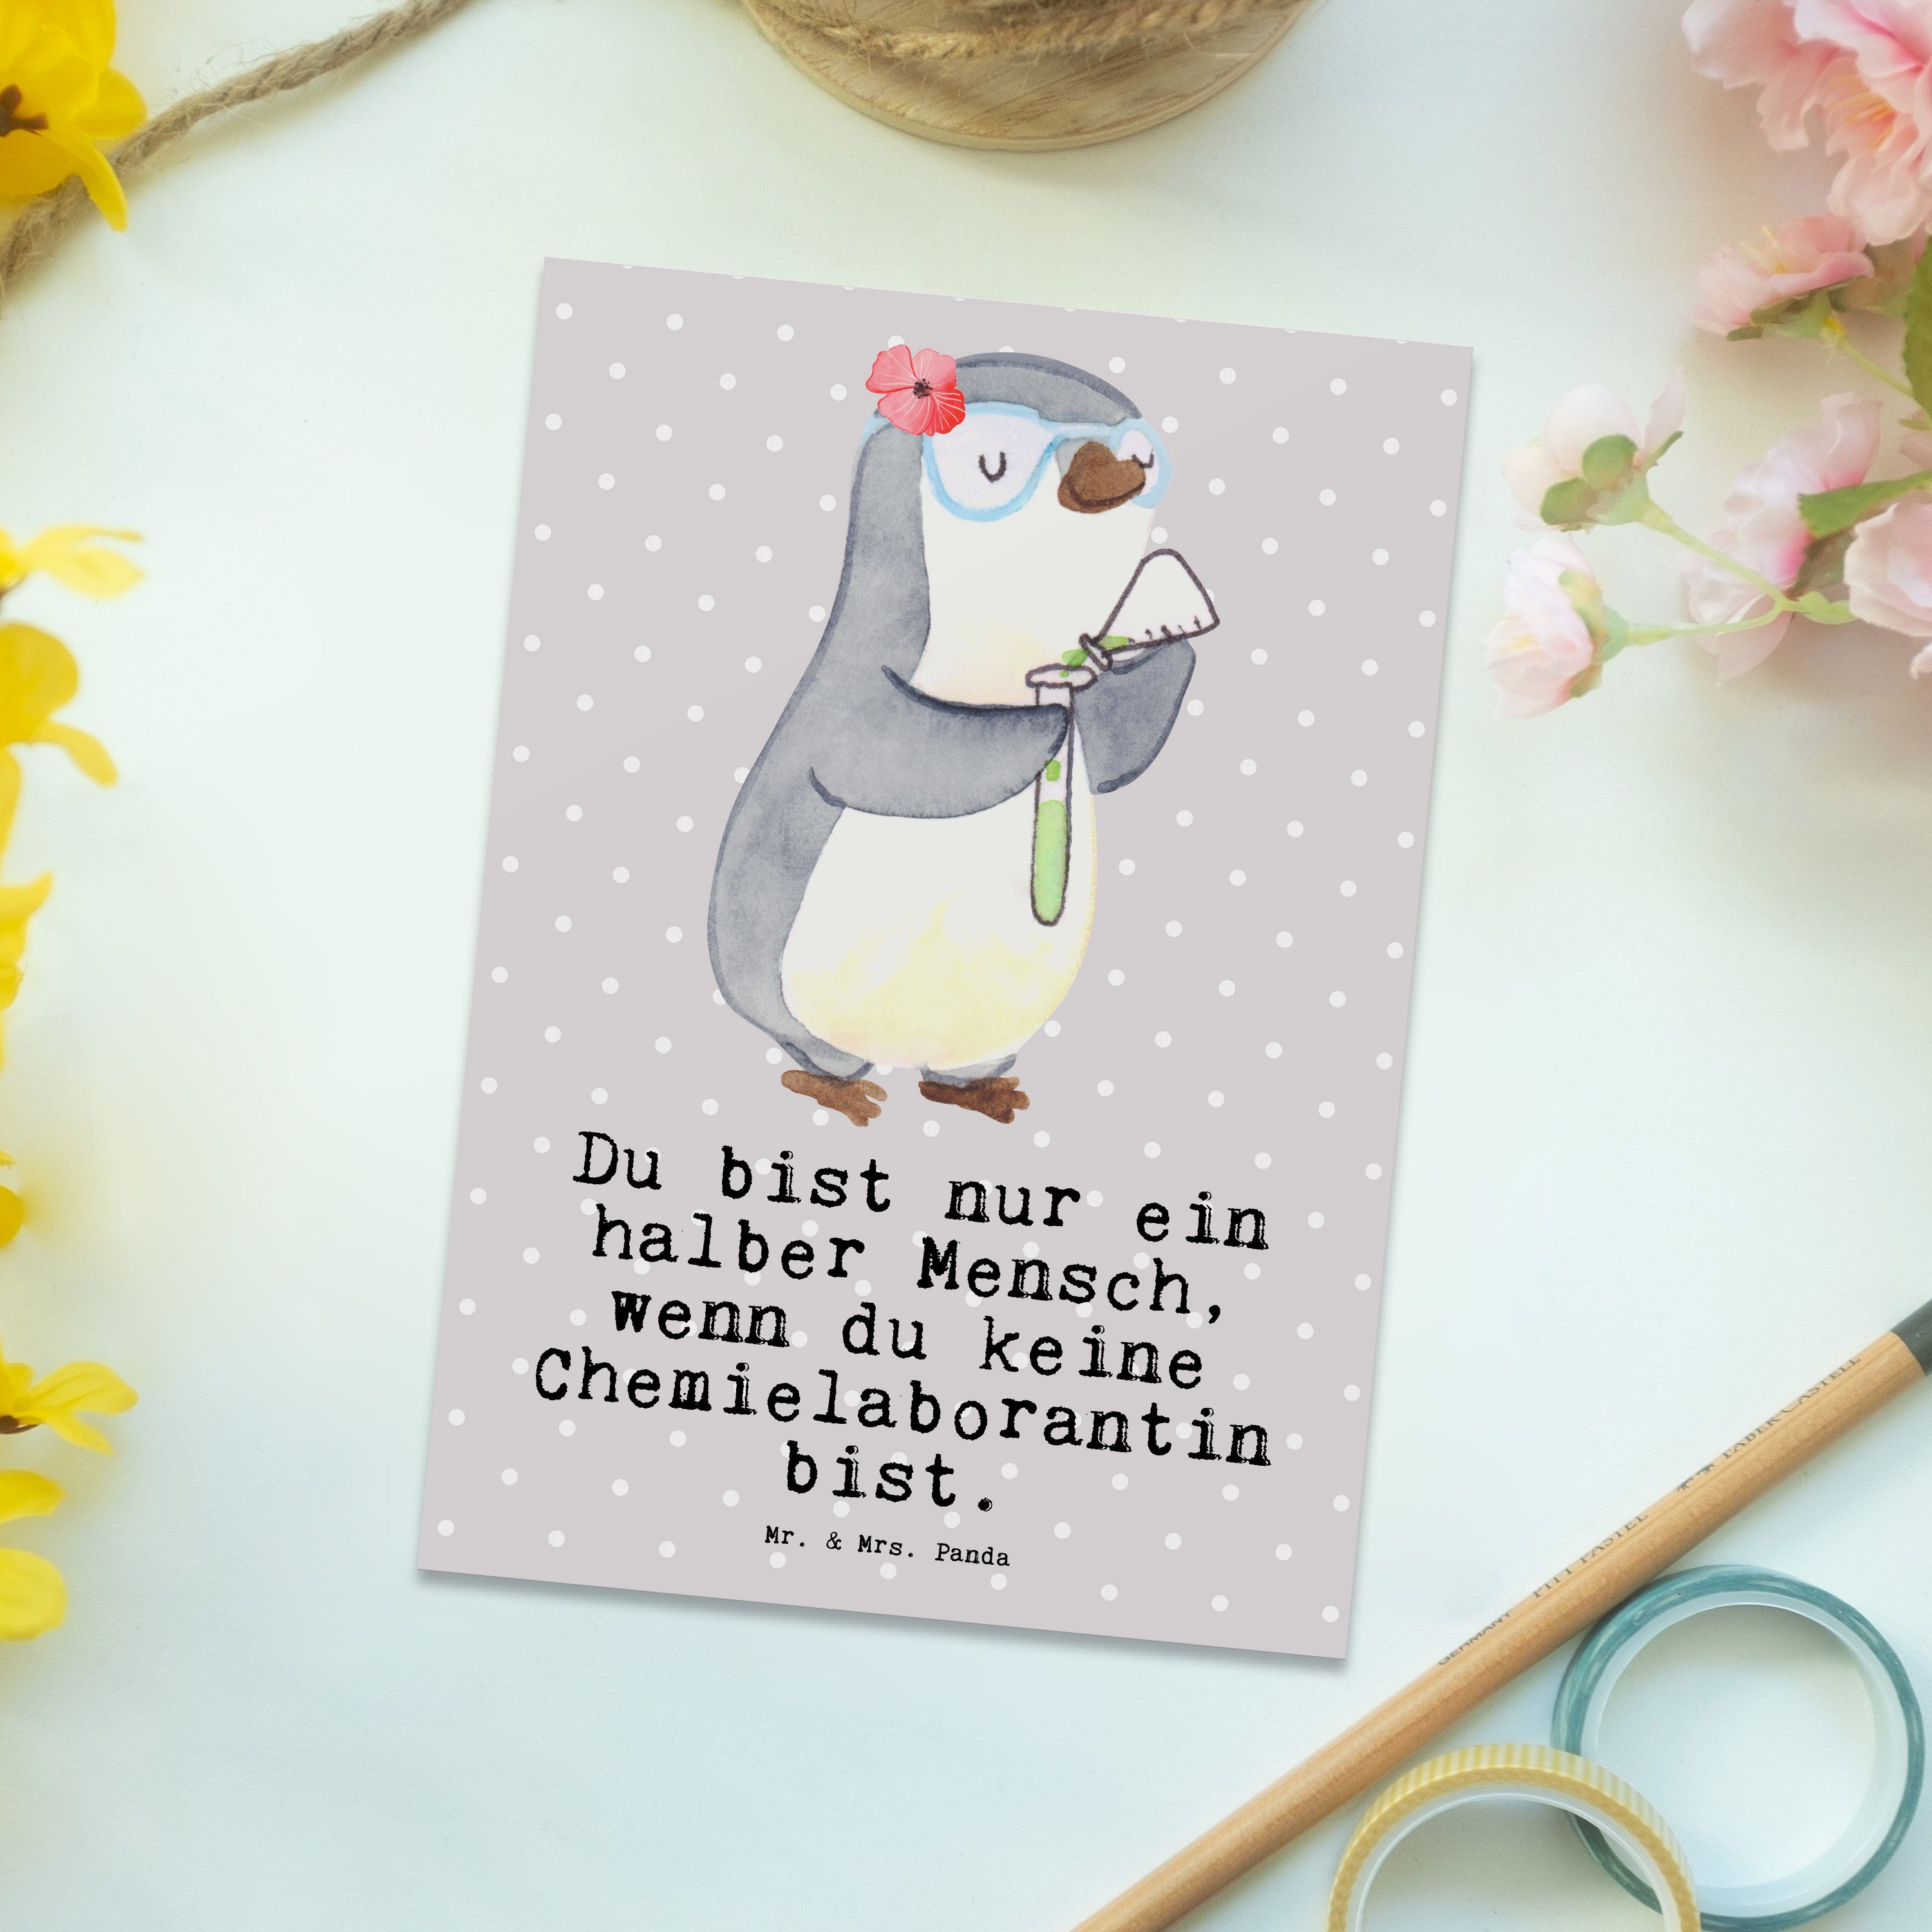 Mr. & - Chemieunterricht Mrs. Herz Geschenk, Chemielaborantin Panda mit Postkarte Grau - Pastell